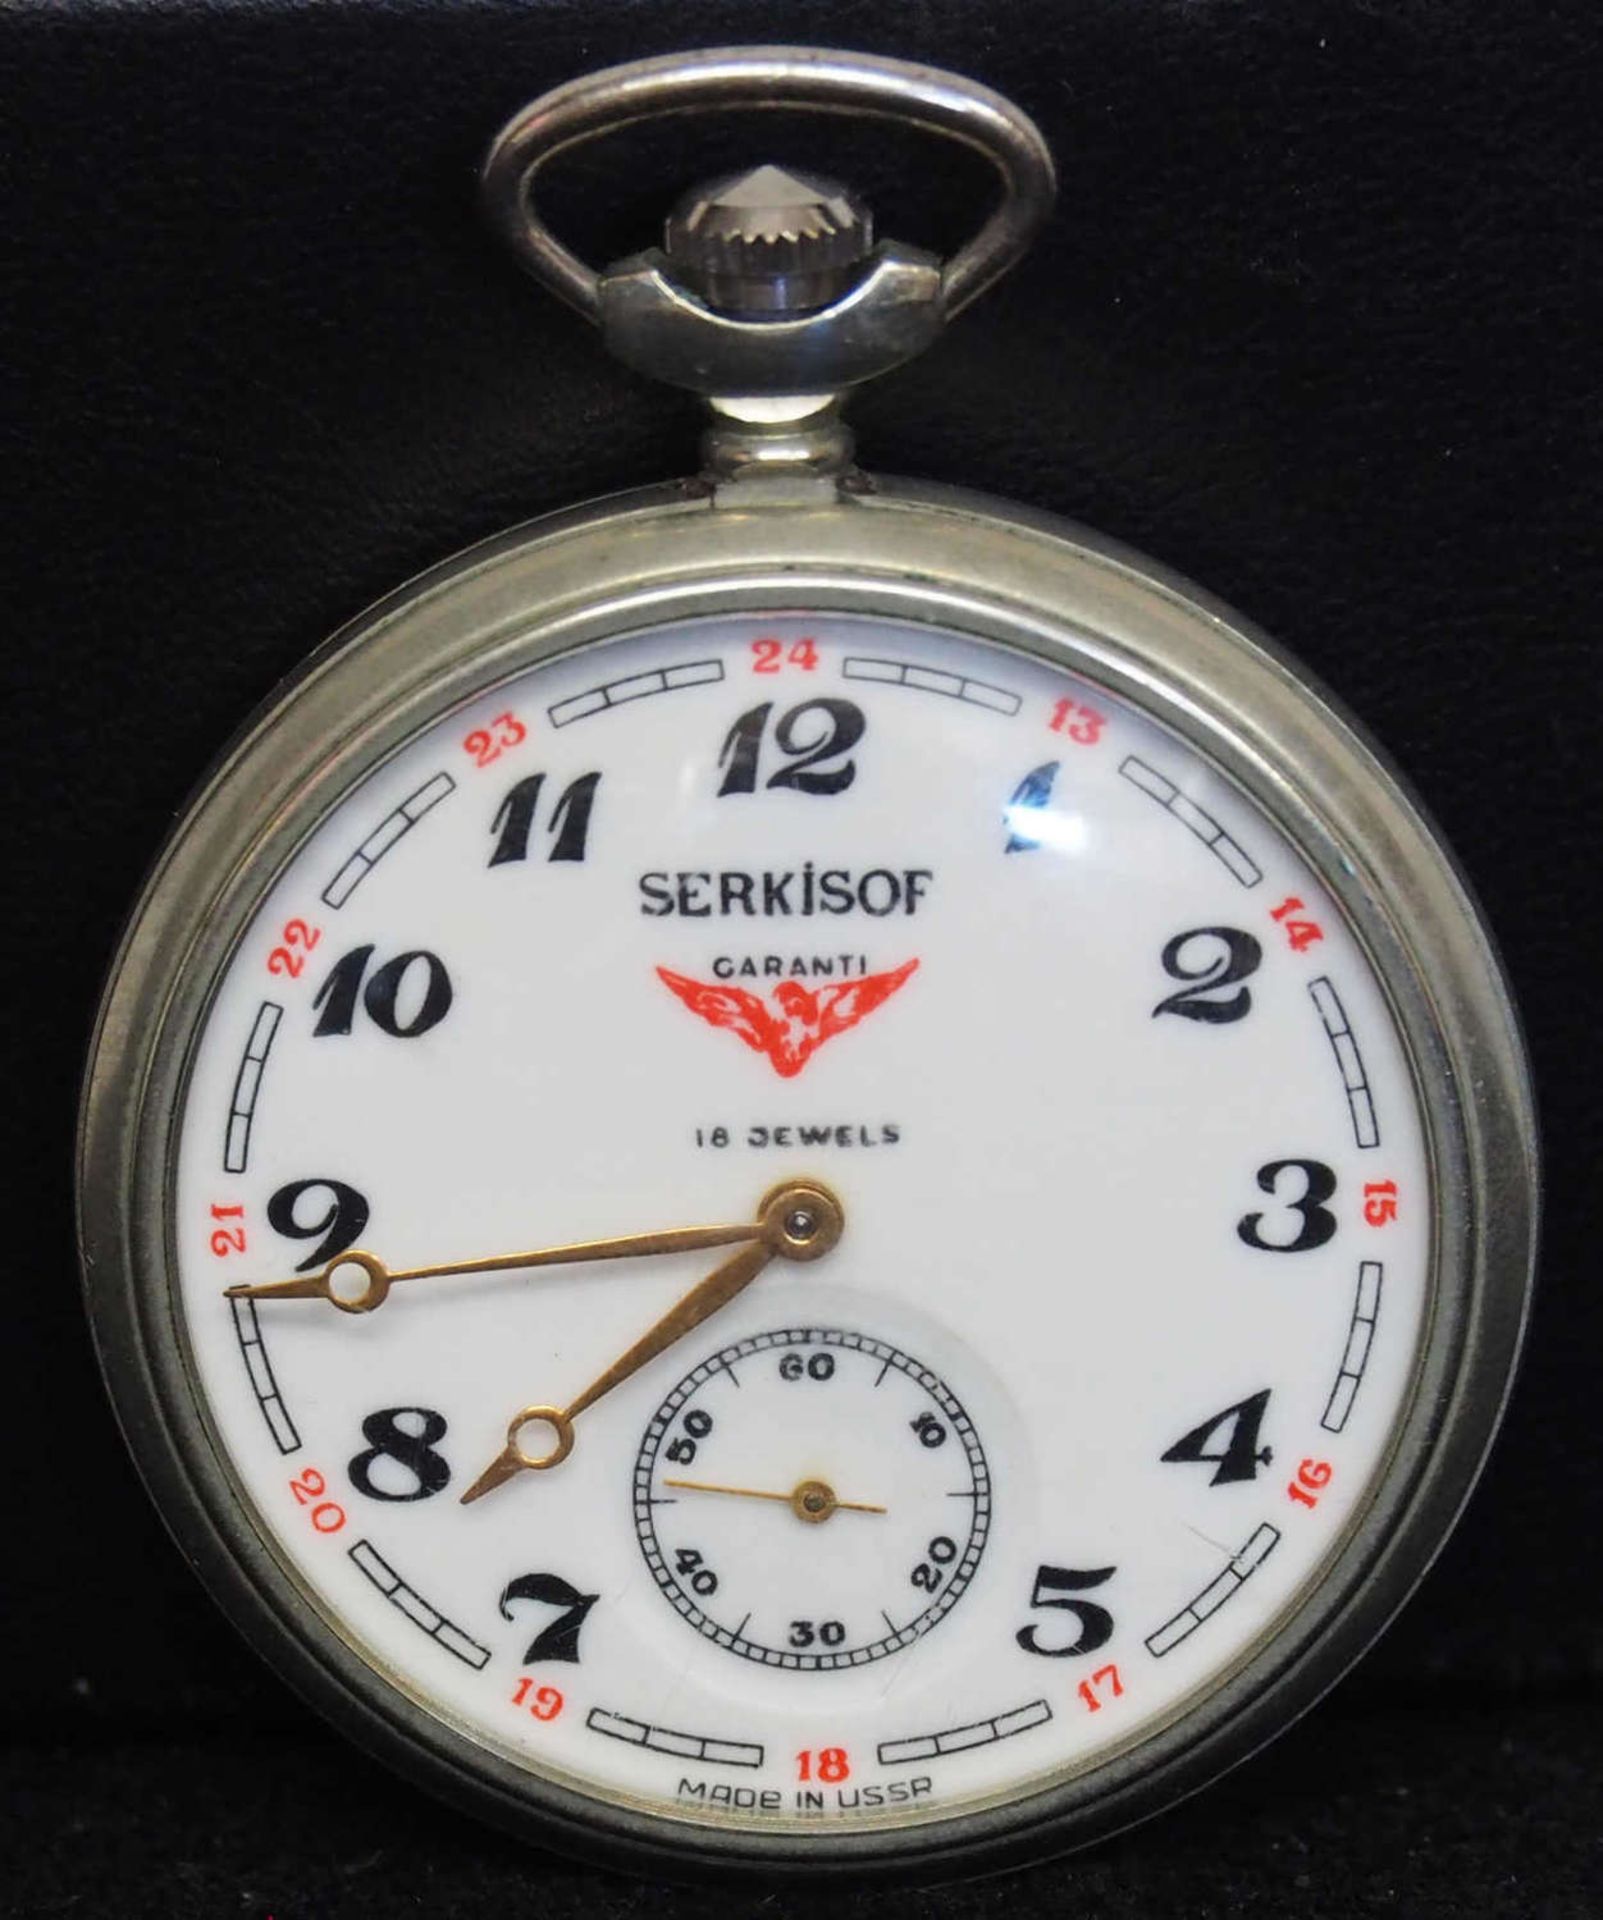 Serkisof Taschenuhr, mechanisch. Made in USSR. 18 Jewwls. Die Uhr läuft an.Serkisof pocket watch,